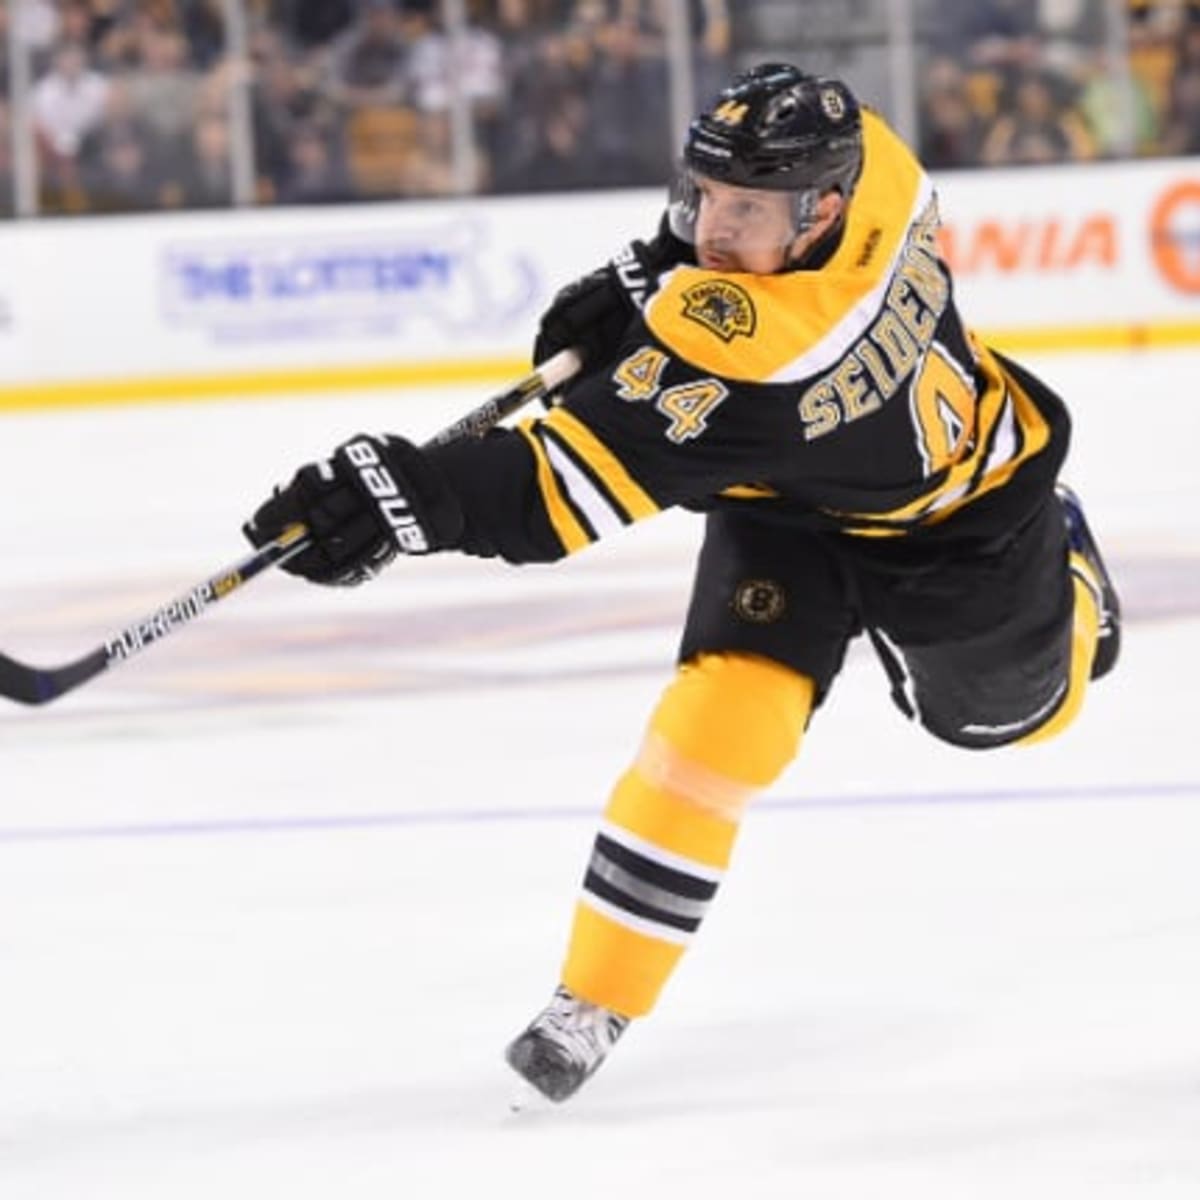 Report: Boston Bruins Close To Trading Torey Krug, Panthers 'Pushing Hard